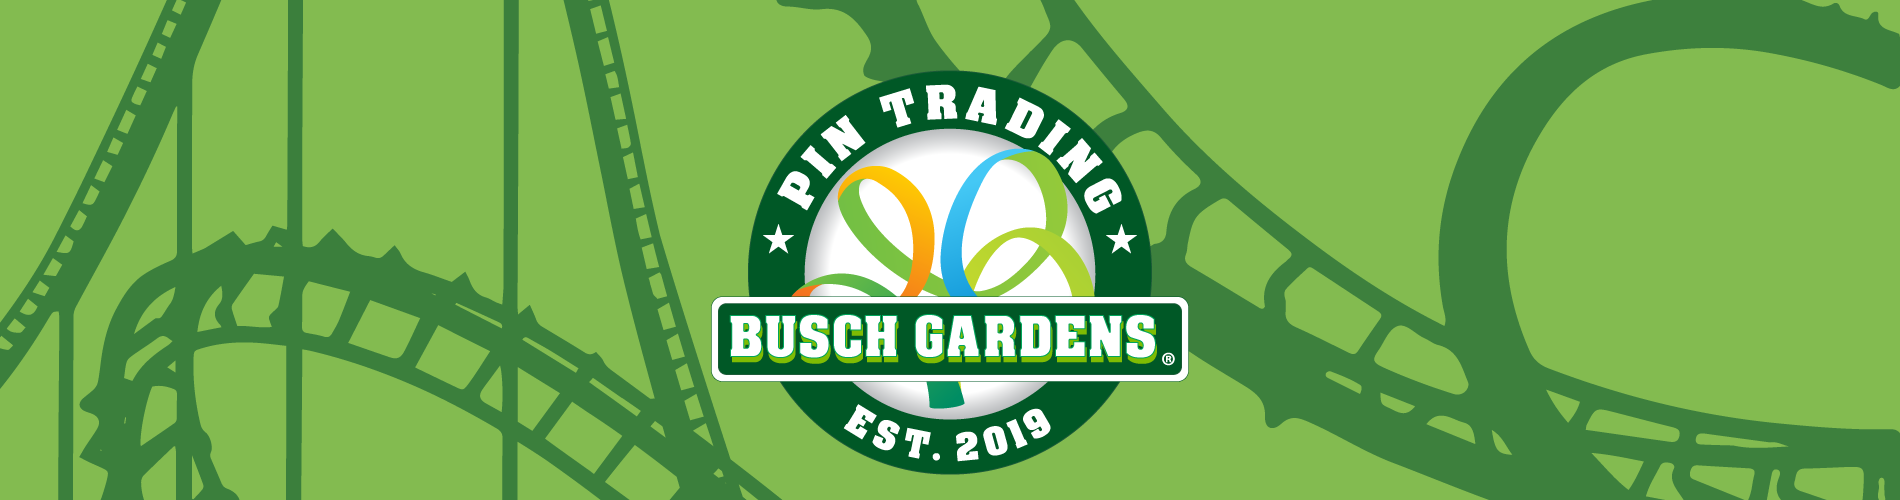 Busch Gardens Pin Trading